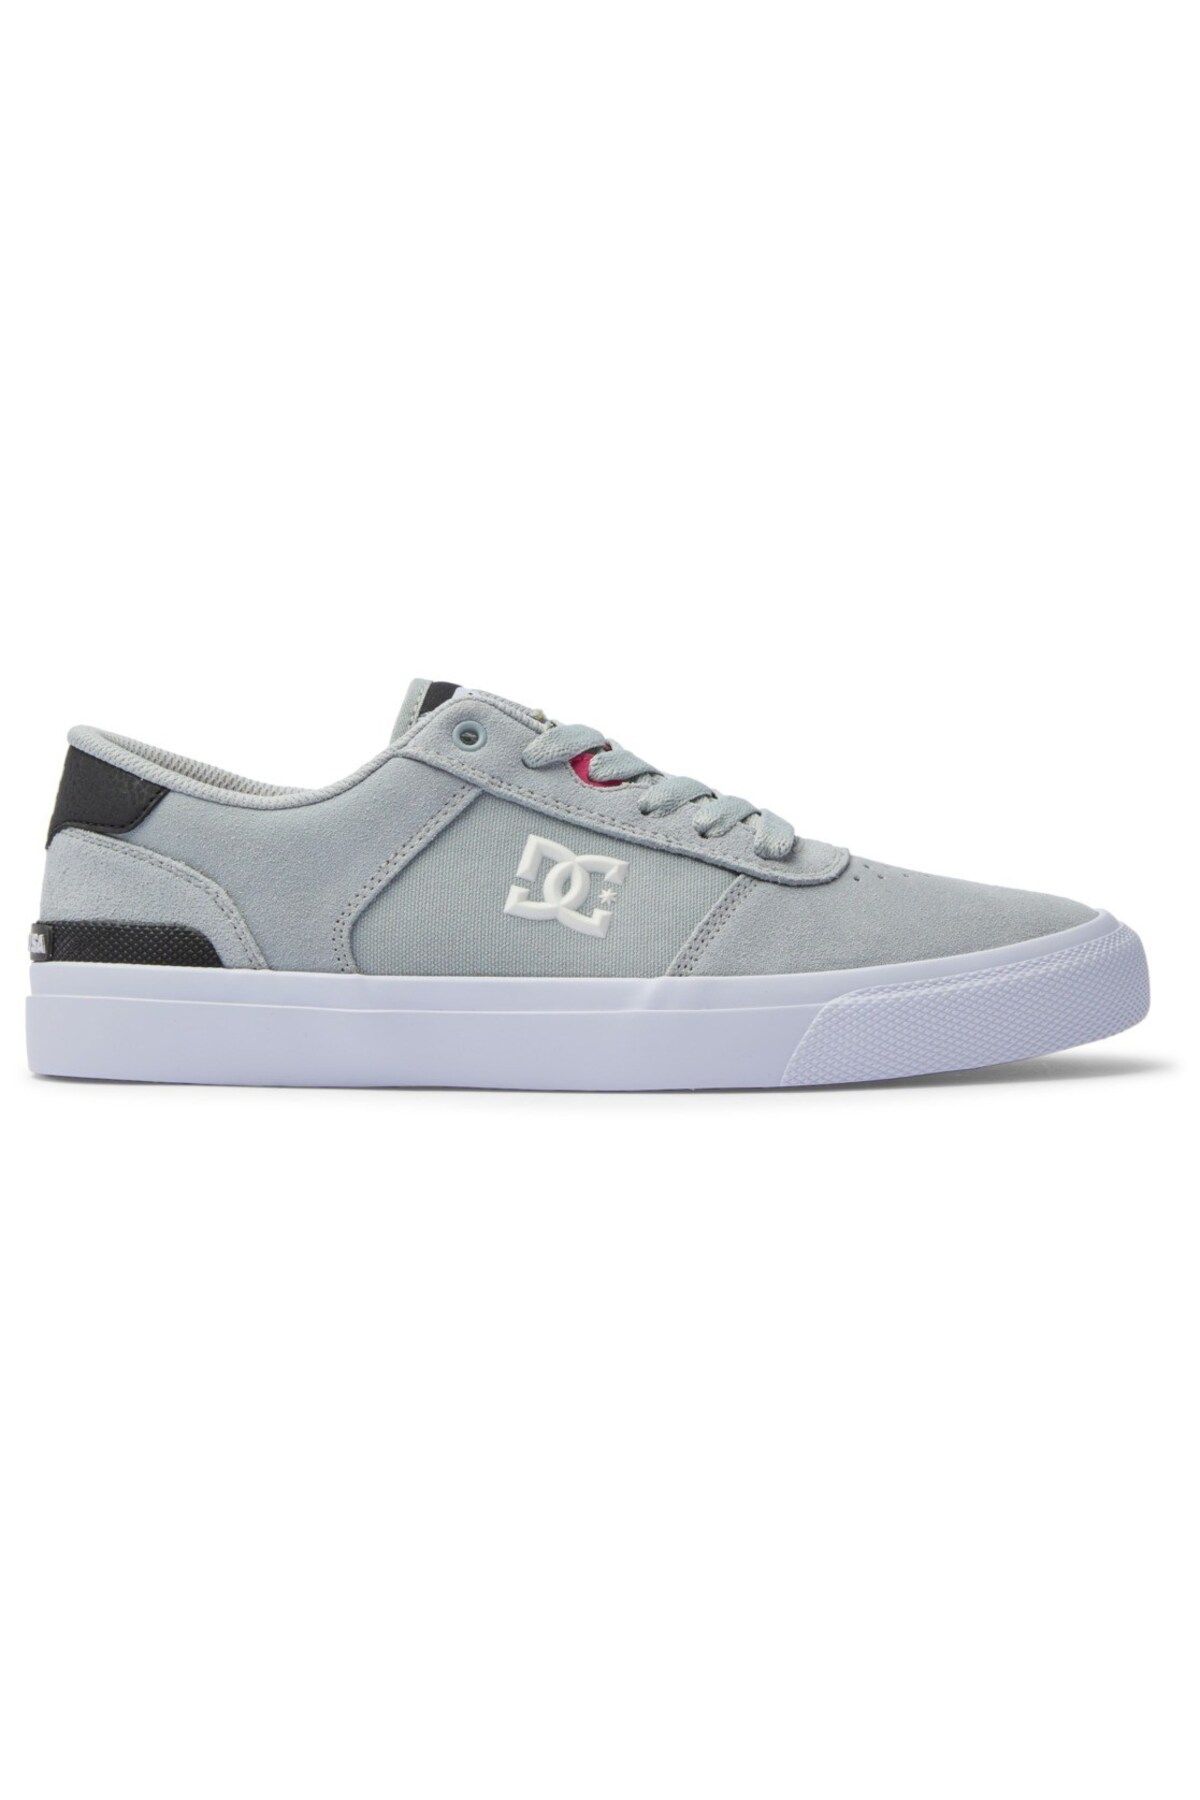 DC Ls Ayakkabı Grey/Black Erkek Günlük Spor Ayakkabı